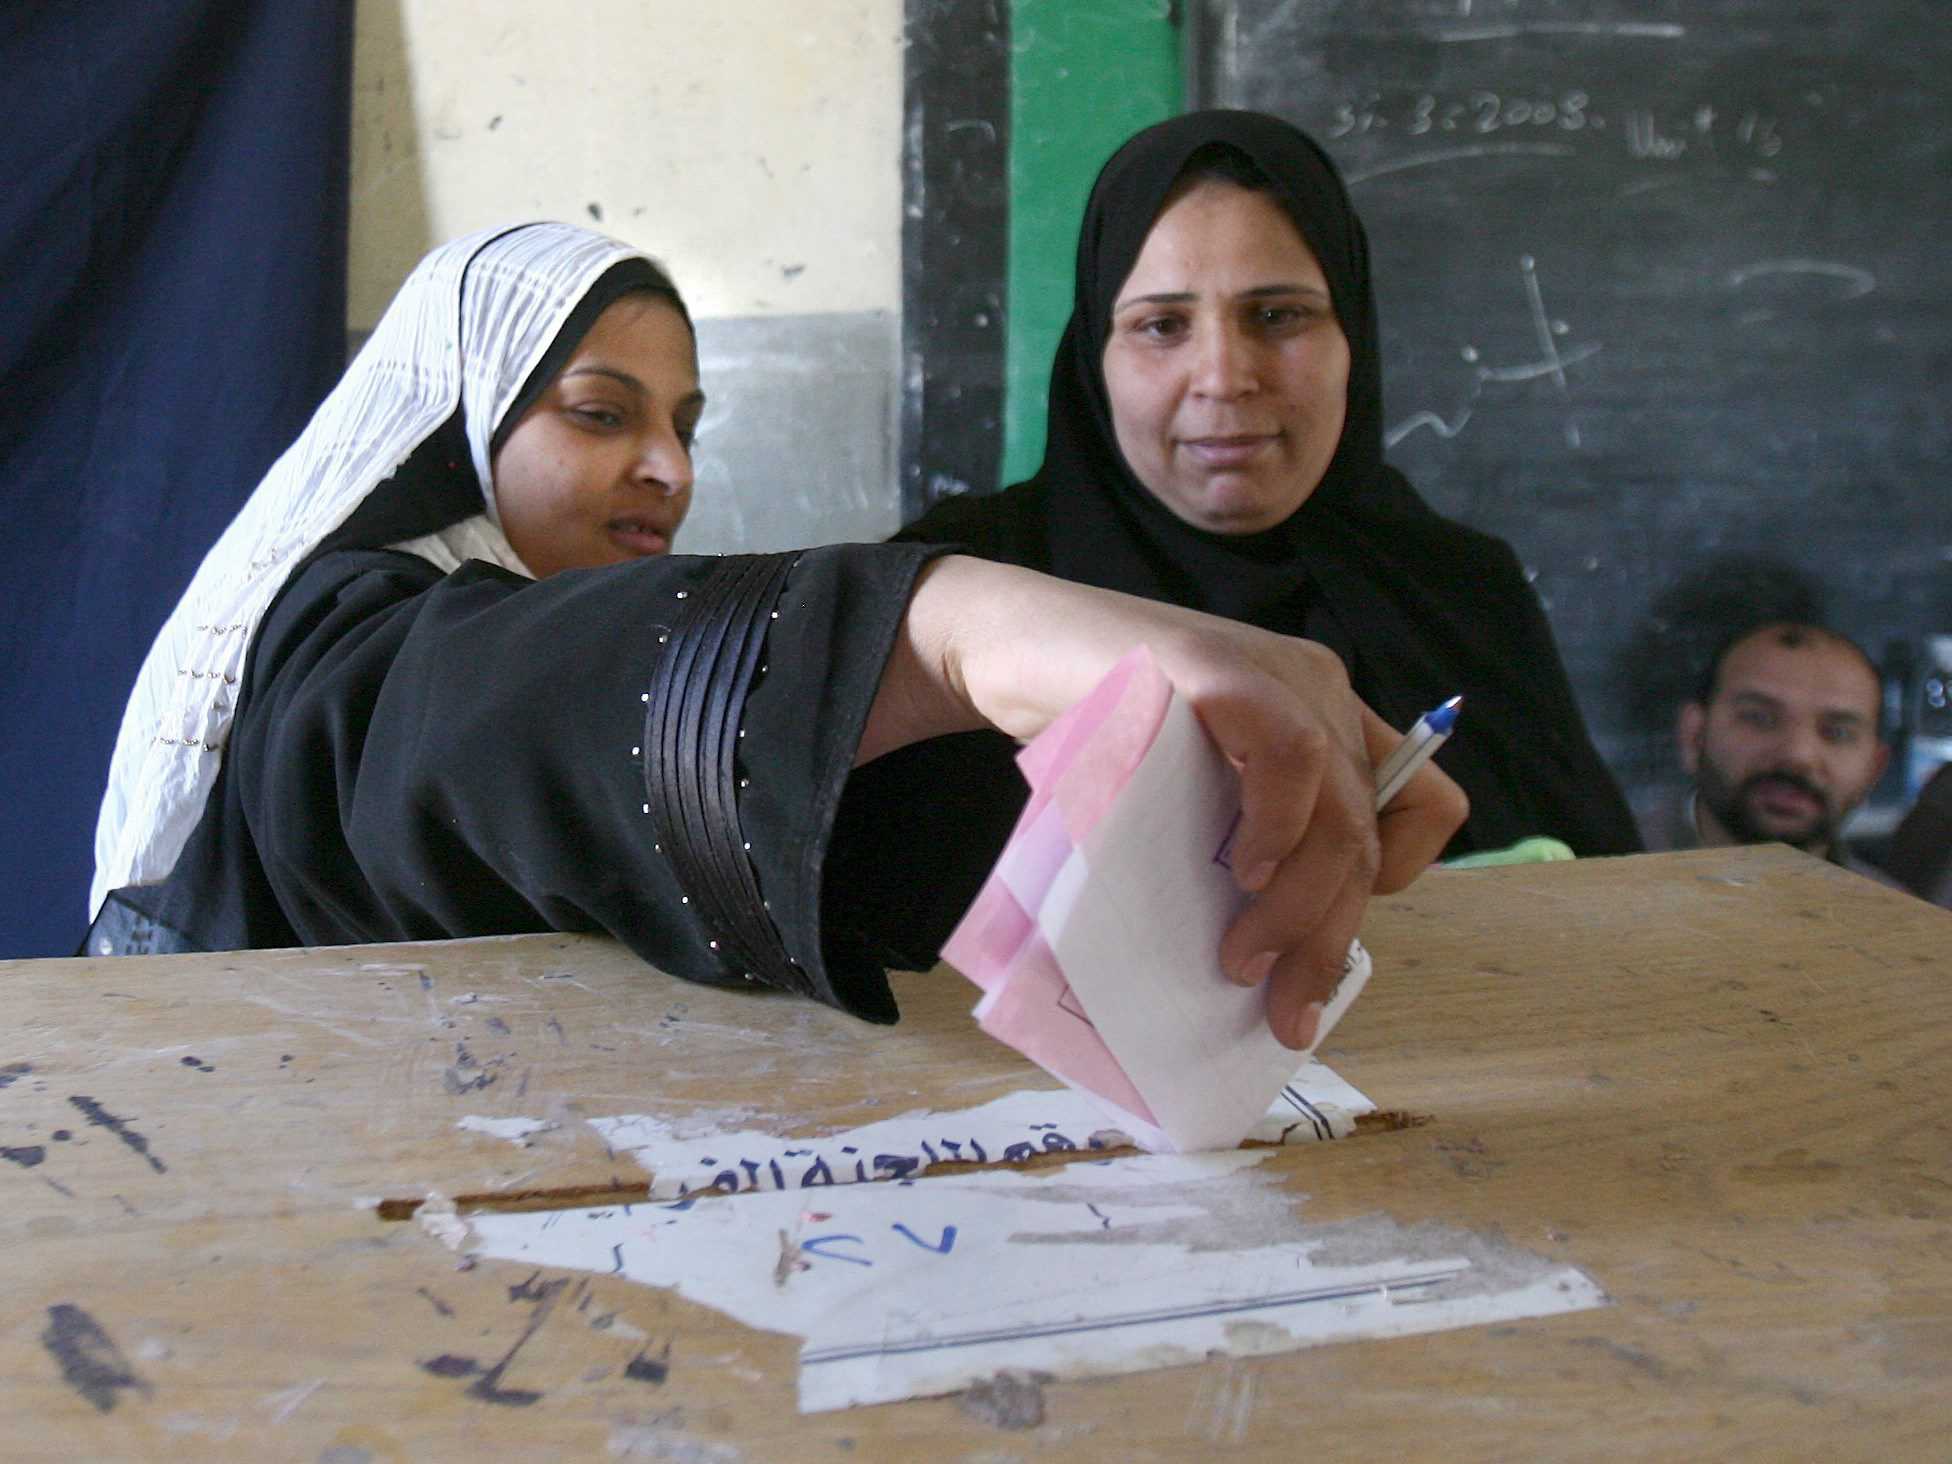 Egitto, si vota nuova Costituzione. Ministero Interno ordina "sparare su chi aggredisce elettori"